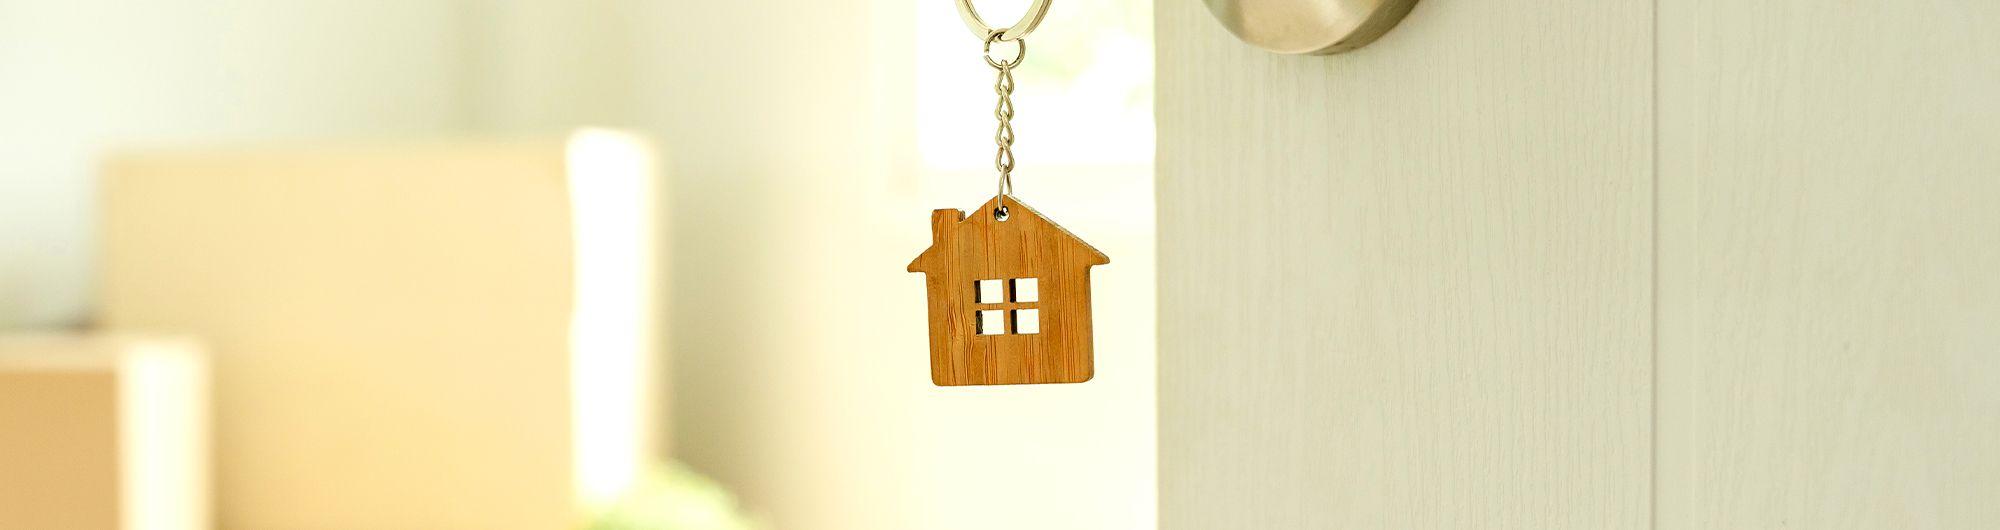 chave de casa com chaveiro em formato de casa presa em porta